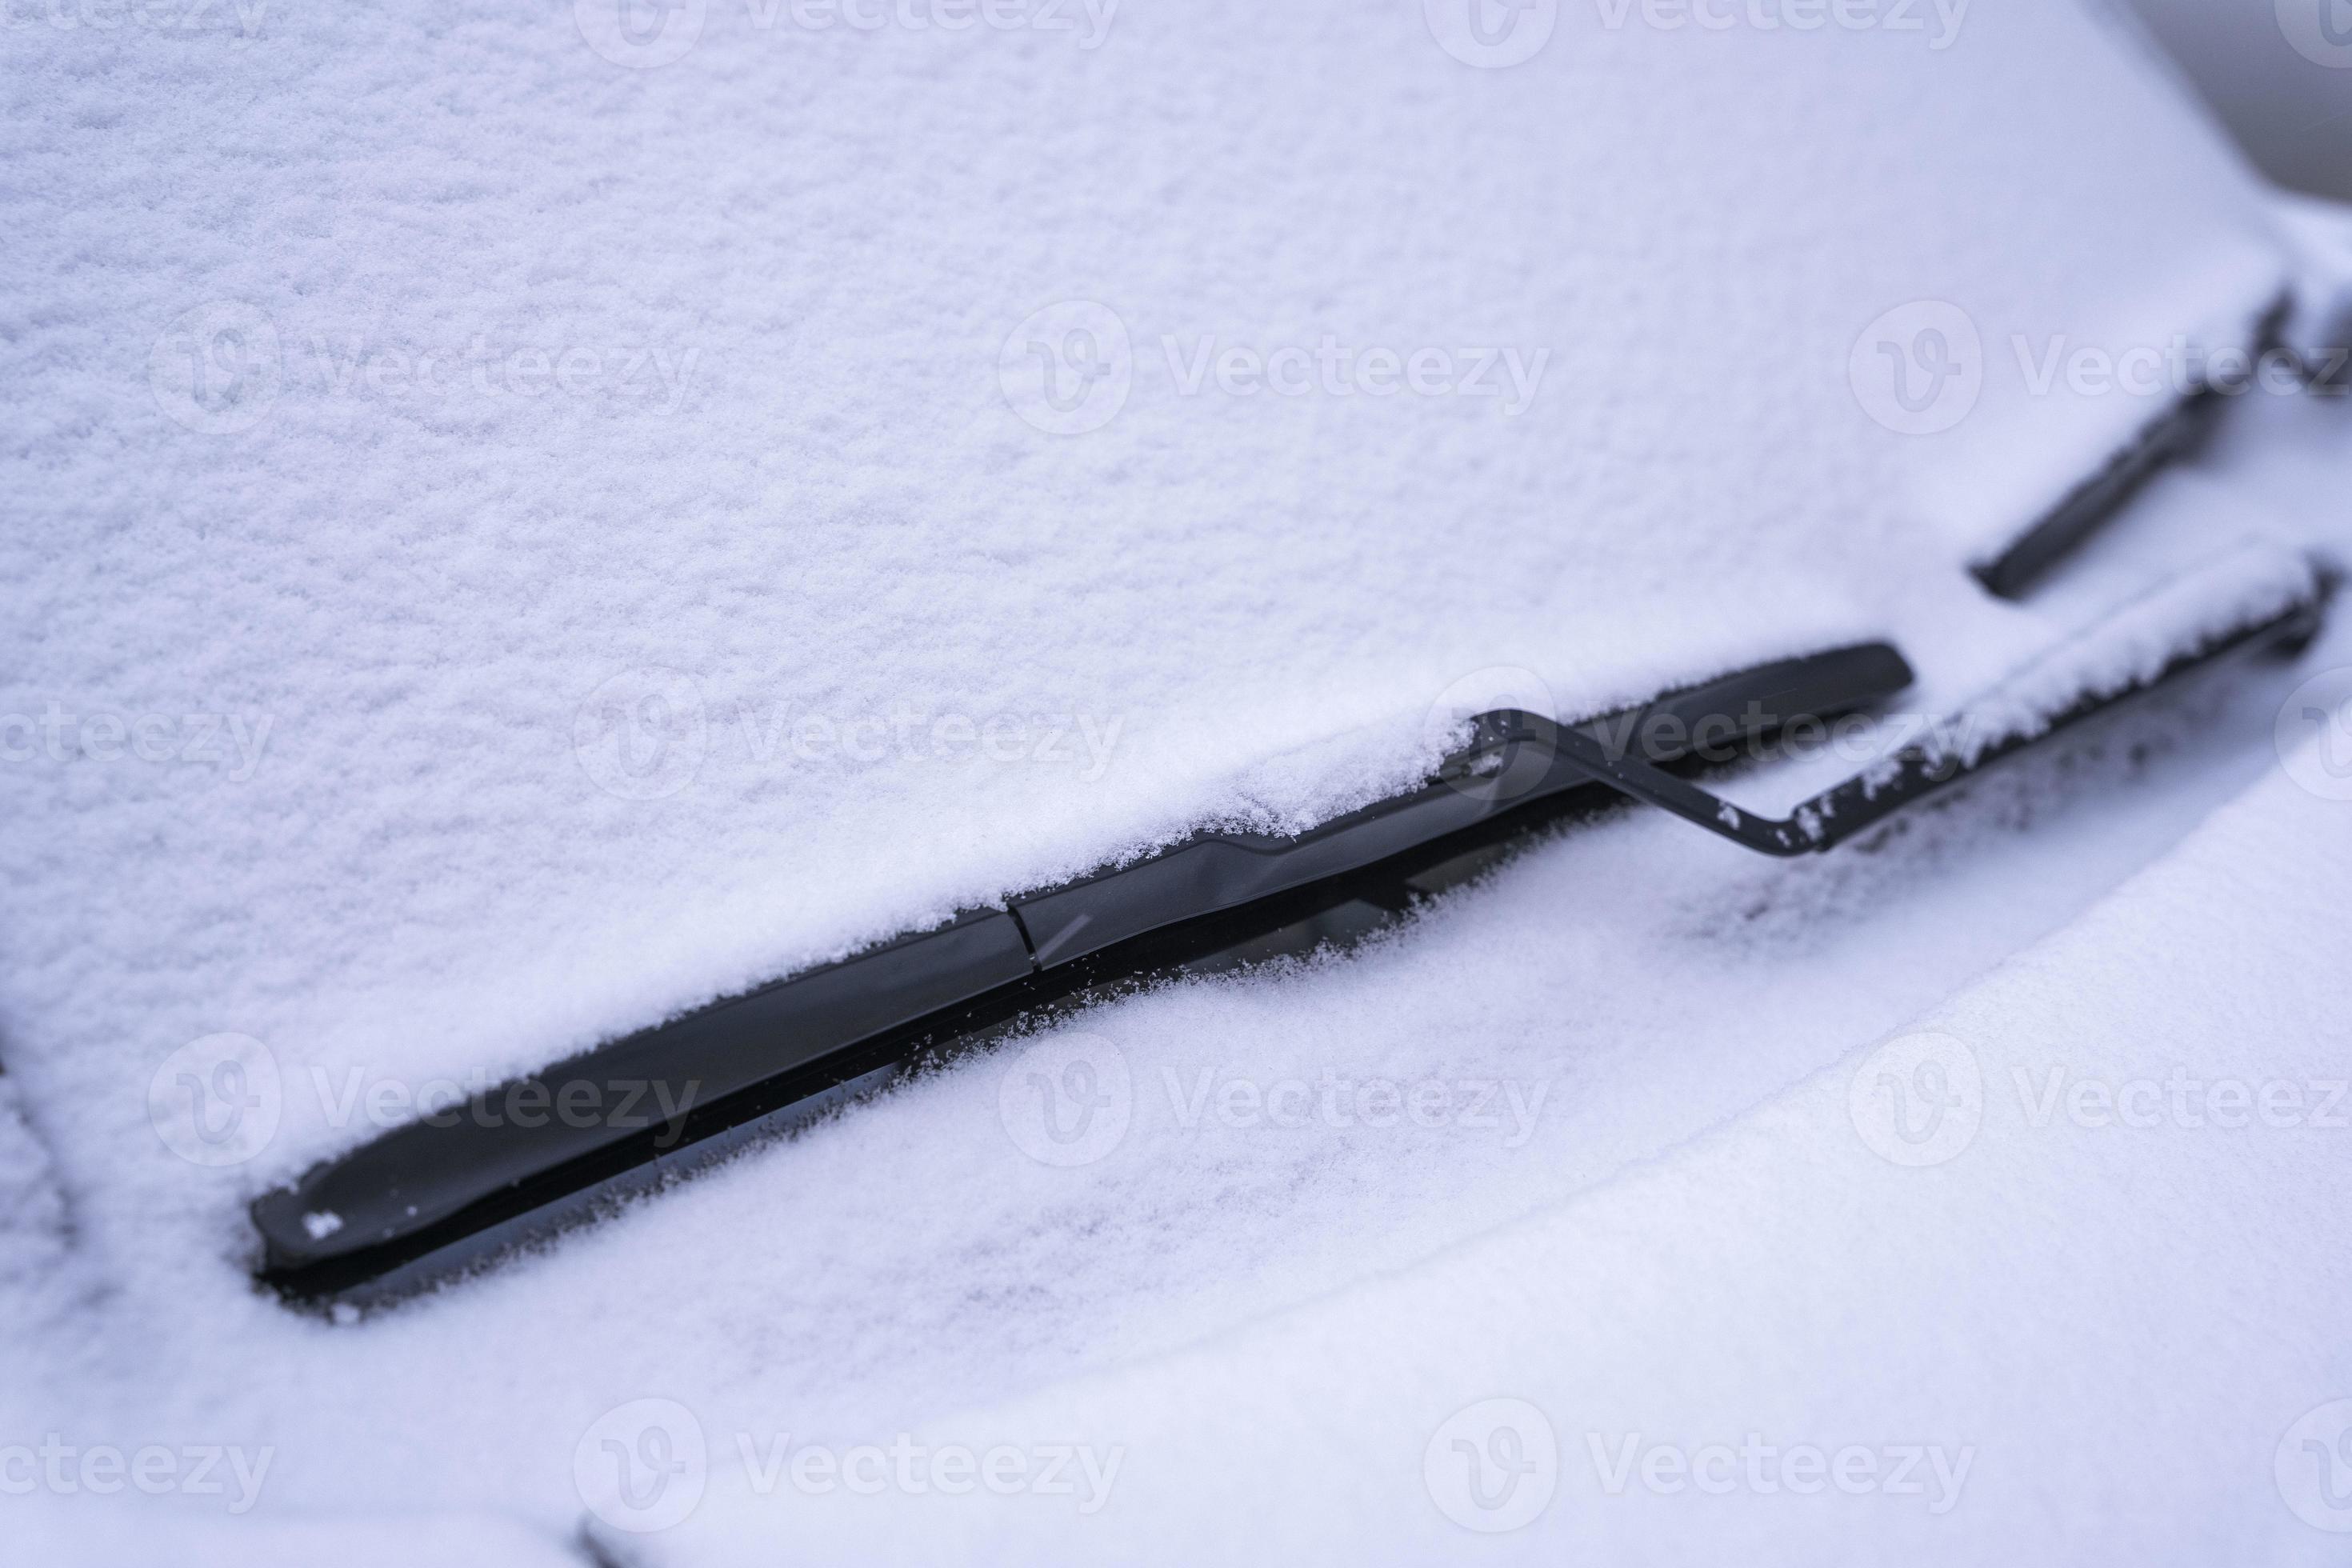 couvert de neige voiture pare-brise, essuie-glace lame dans